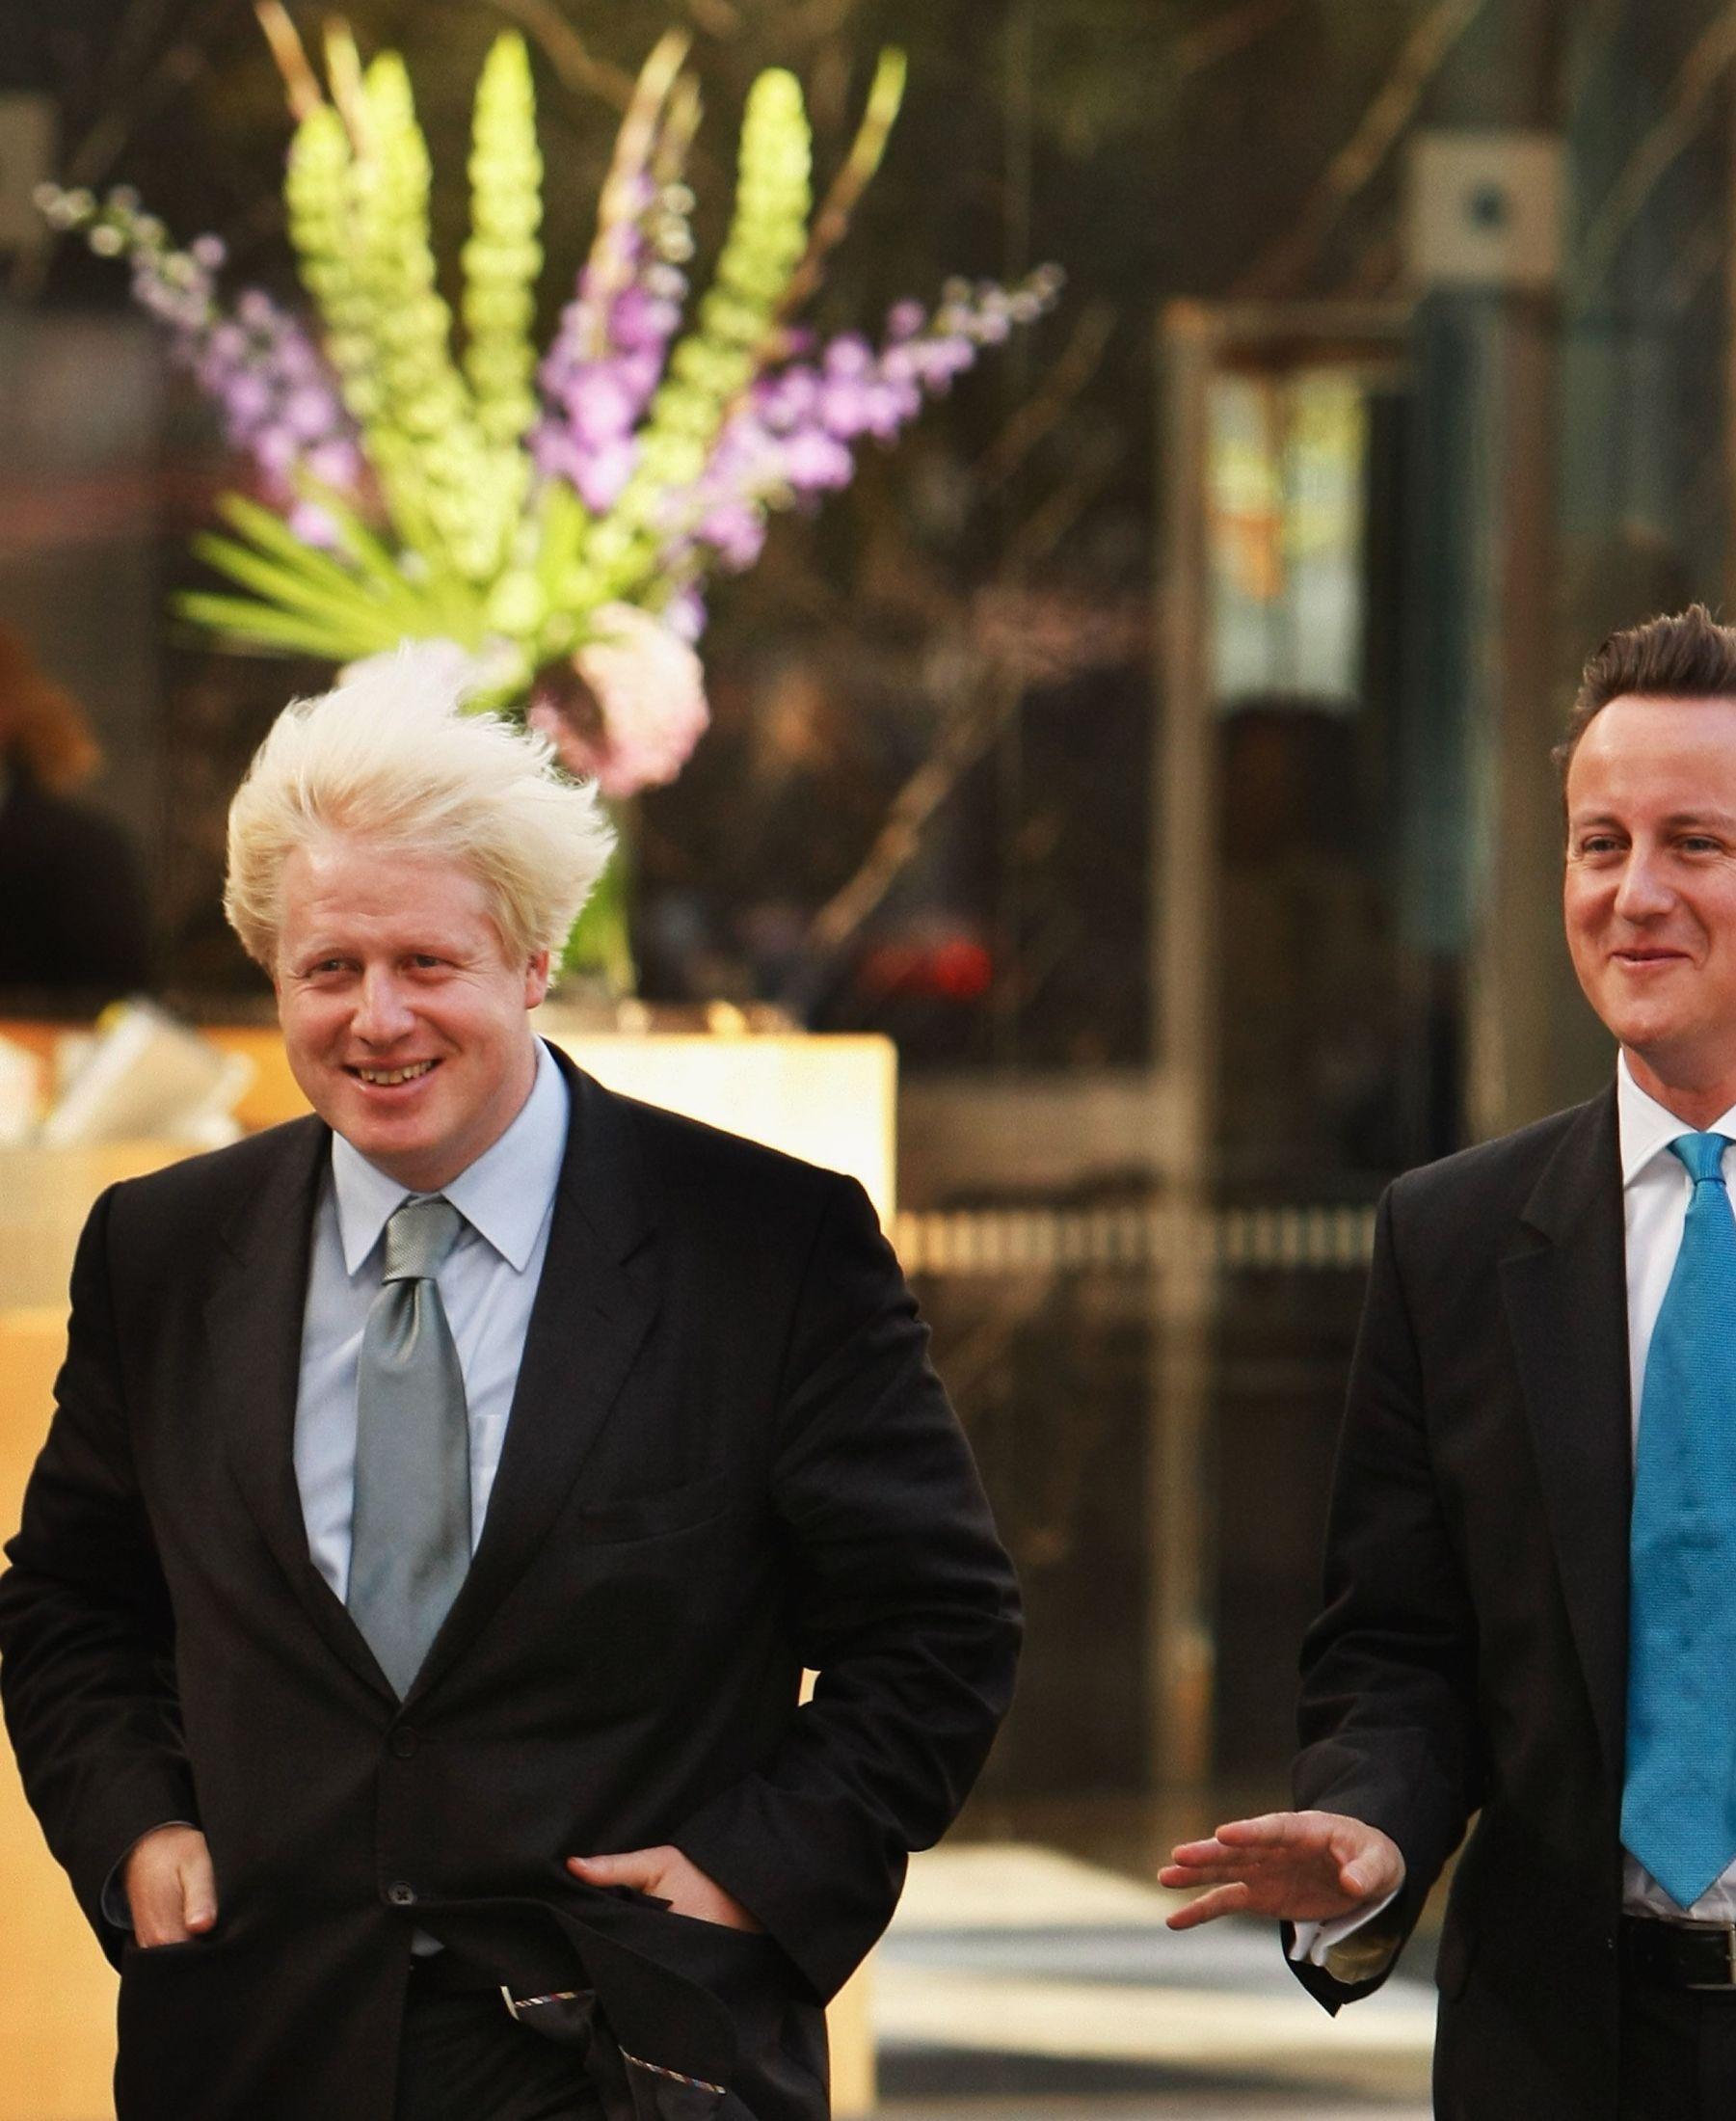 VIND I HÅRET: Boris Johnson fikk Celine Dion-effekten da et vindkast blåste liv i håret under et arrangement i 2007. Foto: Getty Images